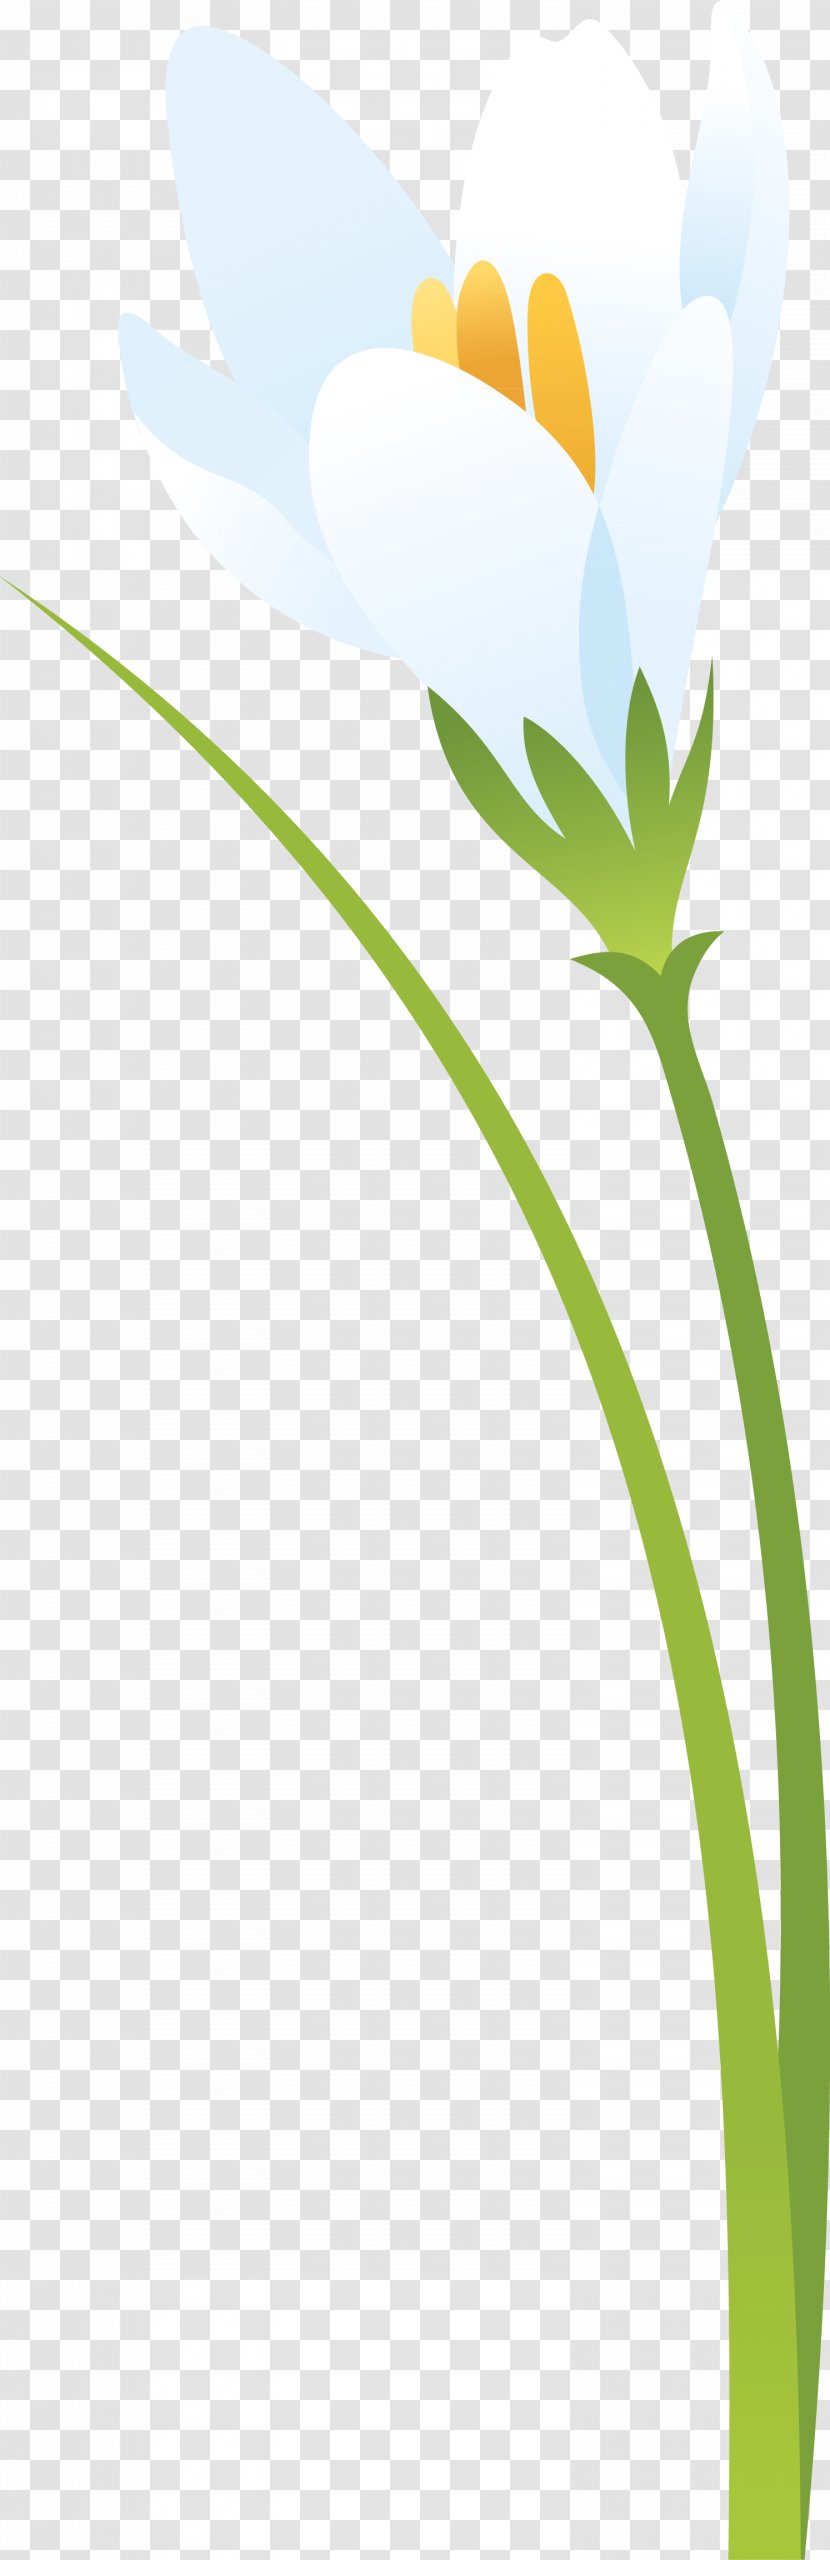 Flower Leaf Petal Plant Stem - Sky - Crocus Transparent PNG